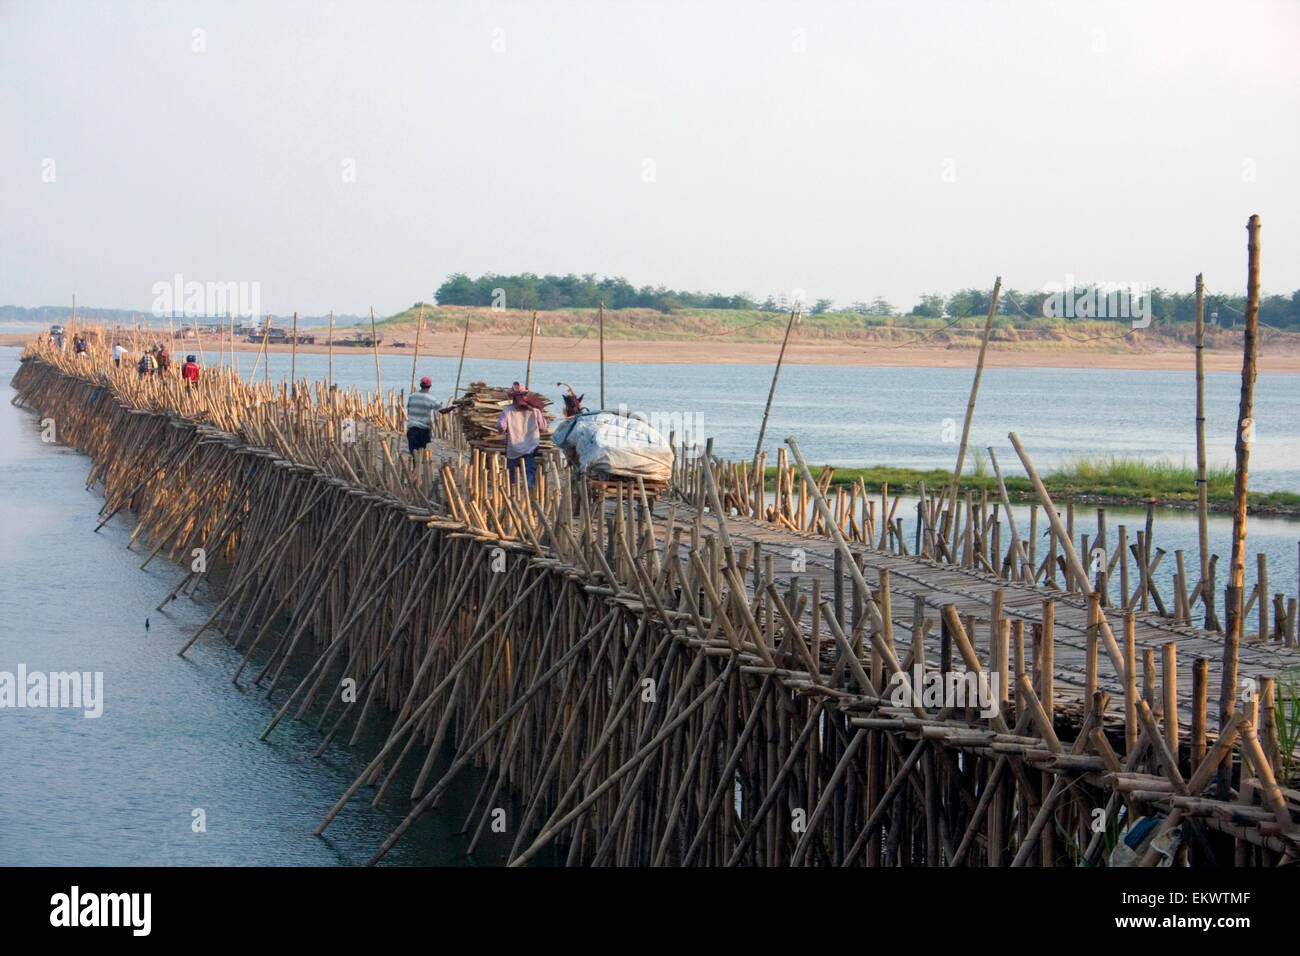 Les gens traversent un pont de bambou qui s'étend sur le Mékong dans la région de Kampong Cham, au Cambodge. Banque D'Images